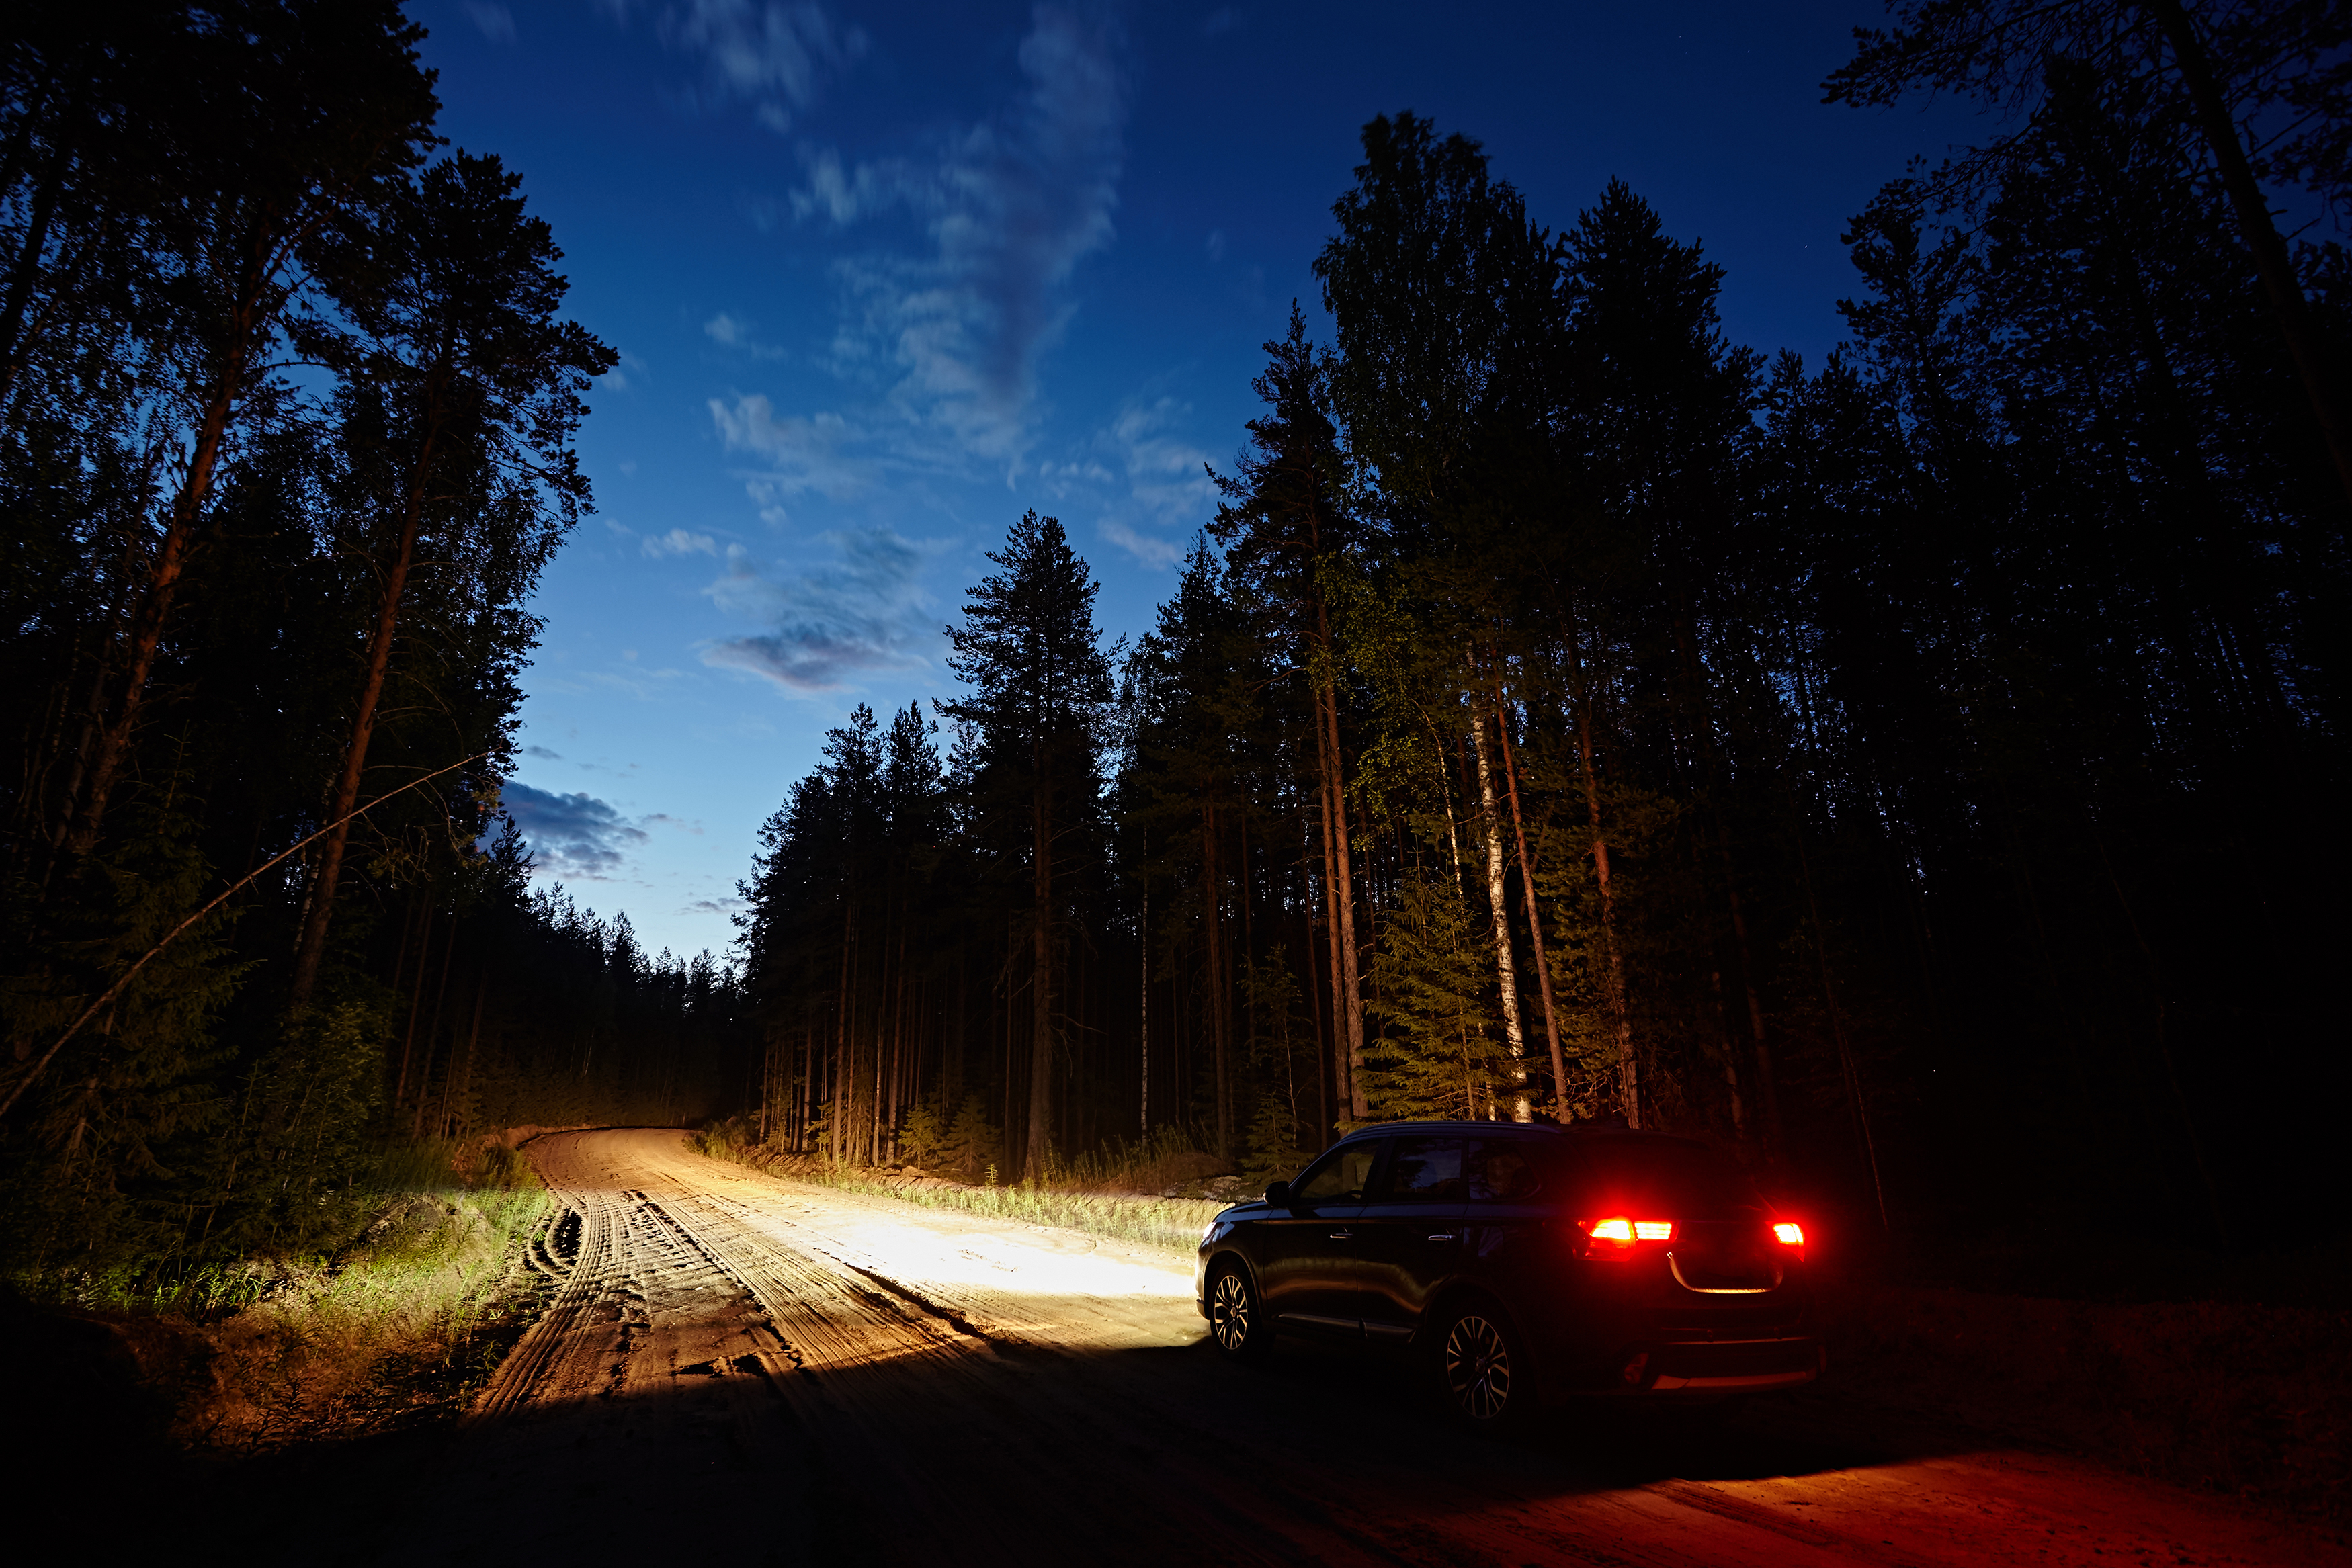 Une voiture roulant sur un chemin de terre dans les bois | Source : Shutterstock